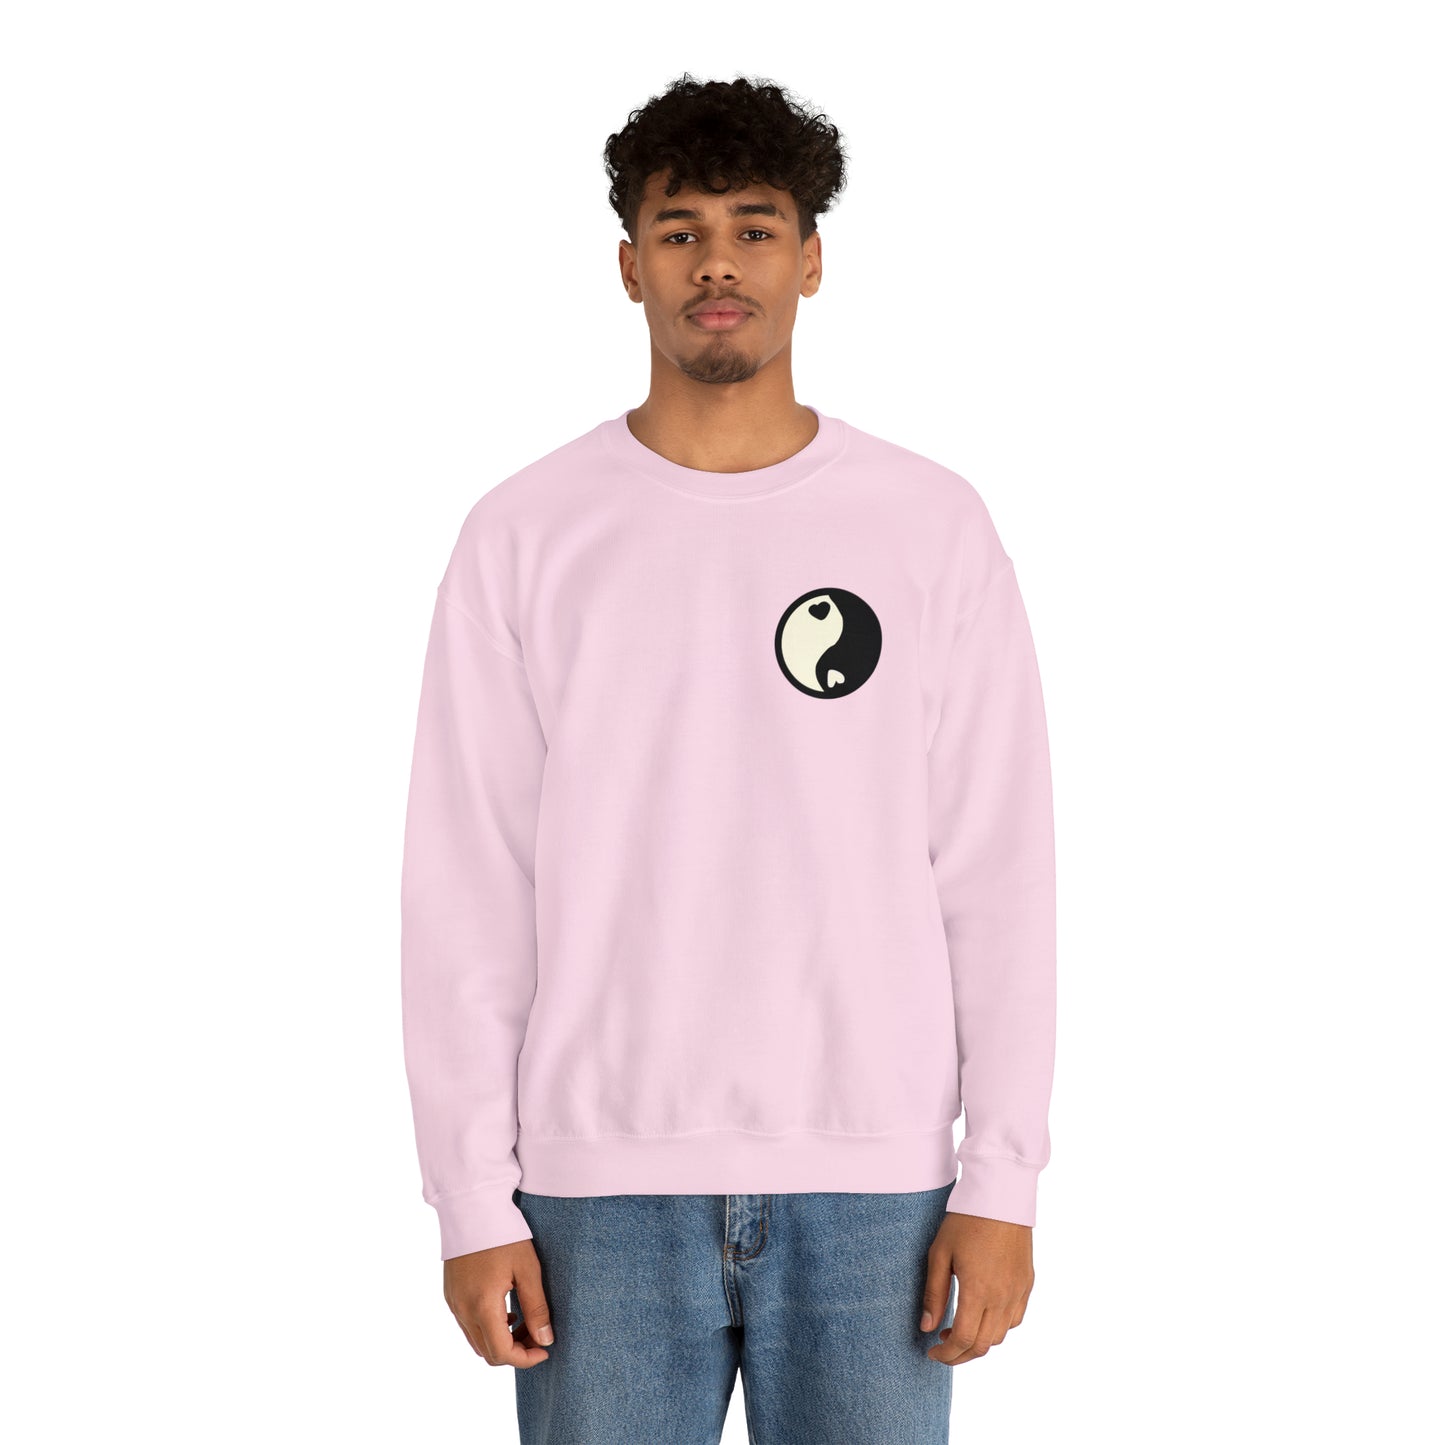 Good Karma & Balance - Crewneck Sweatshirt